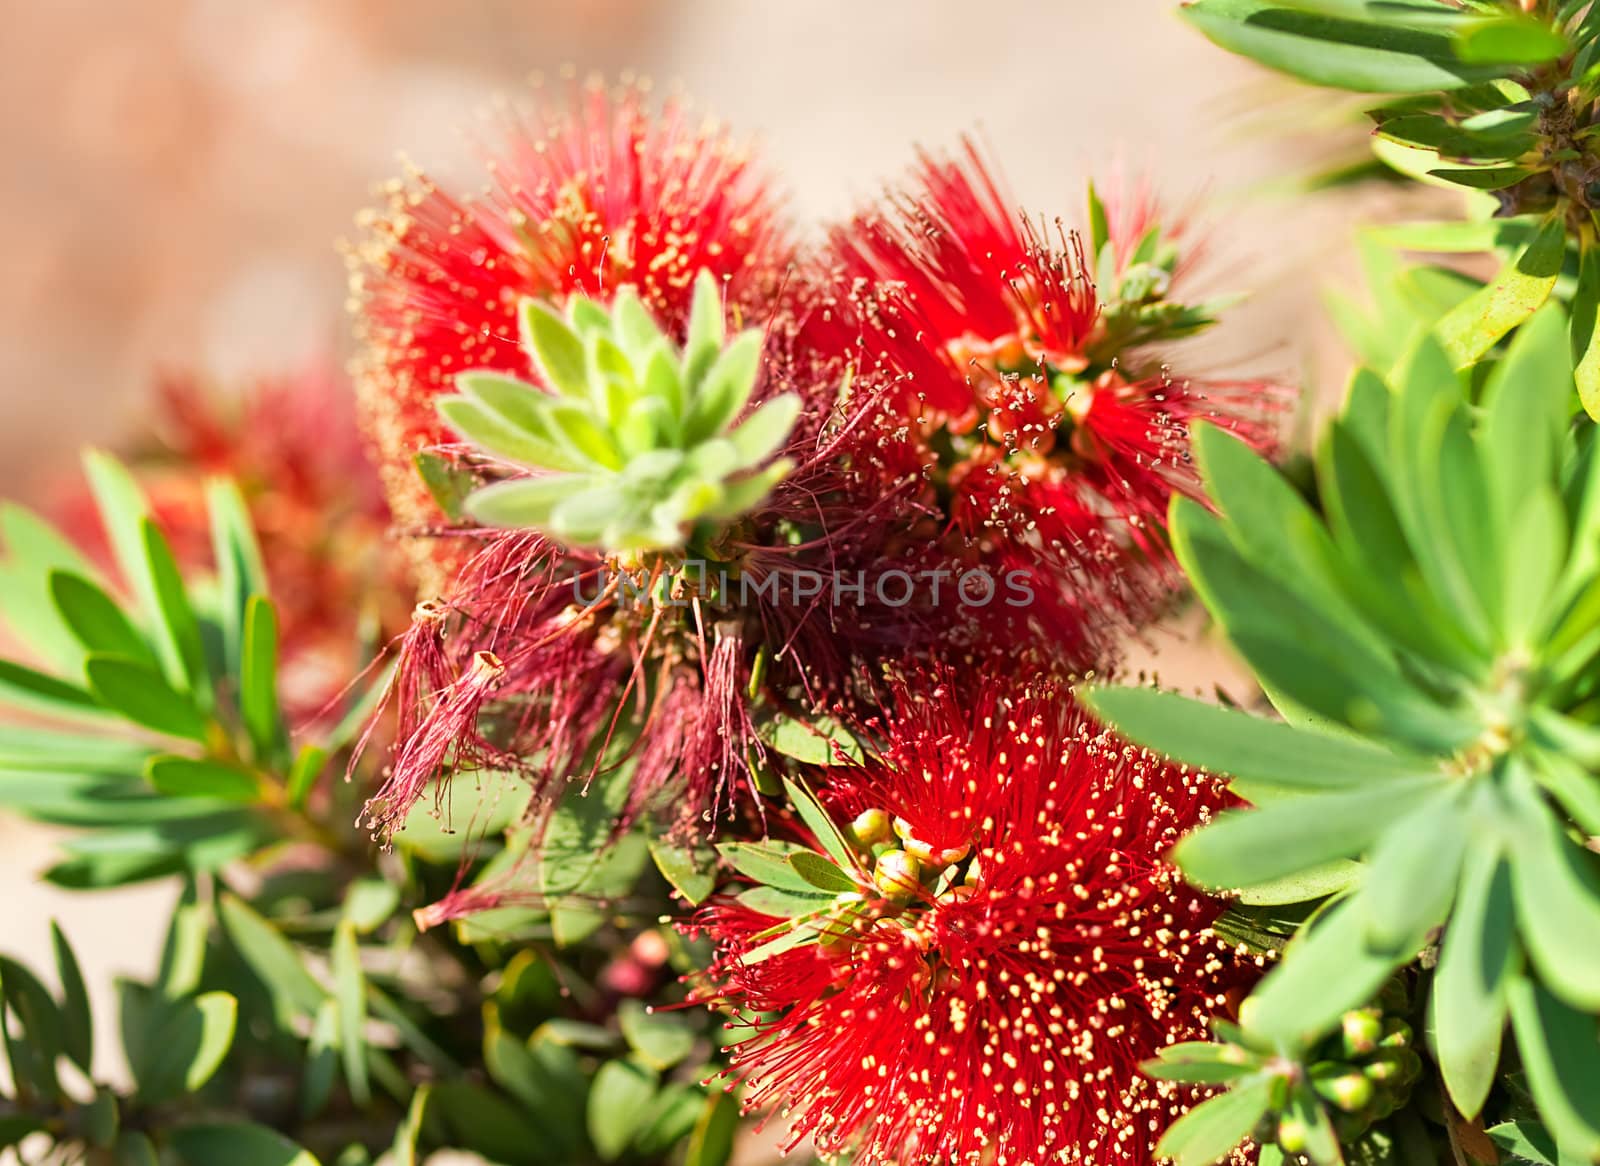 Red bottlebrush flower Australian native plant Callistemon Little John cultivar 